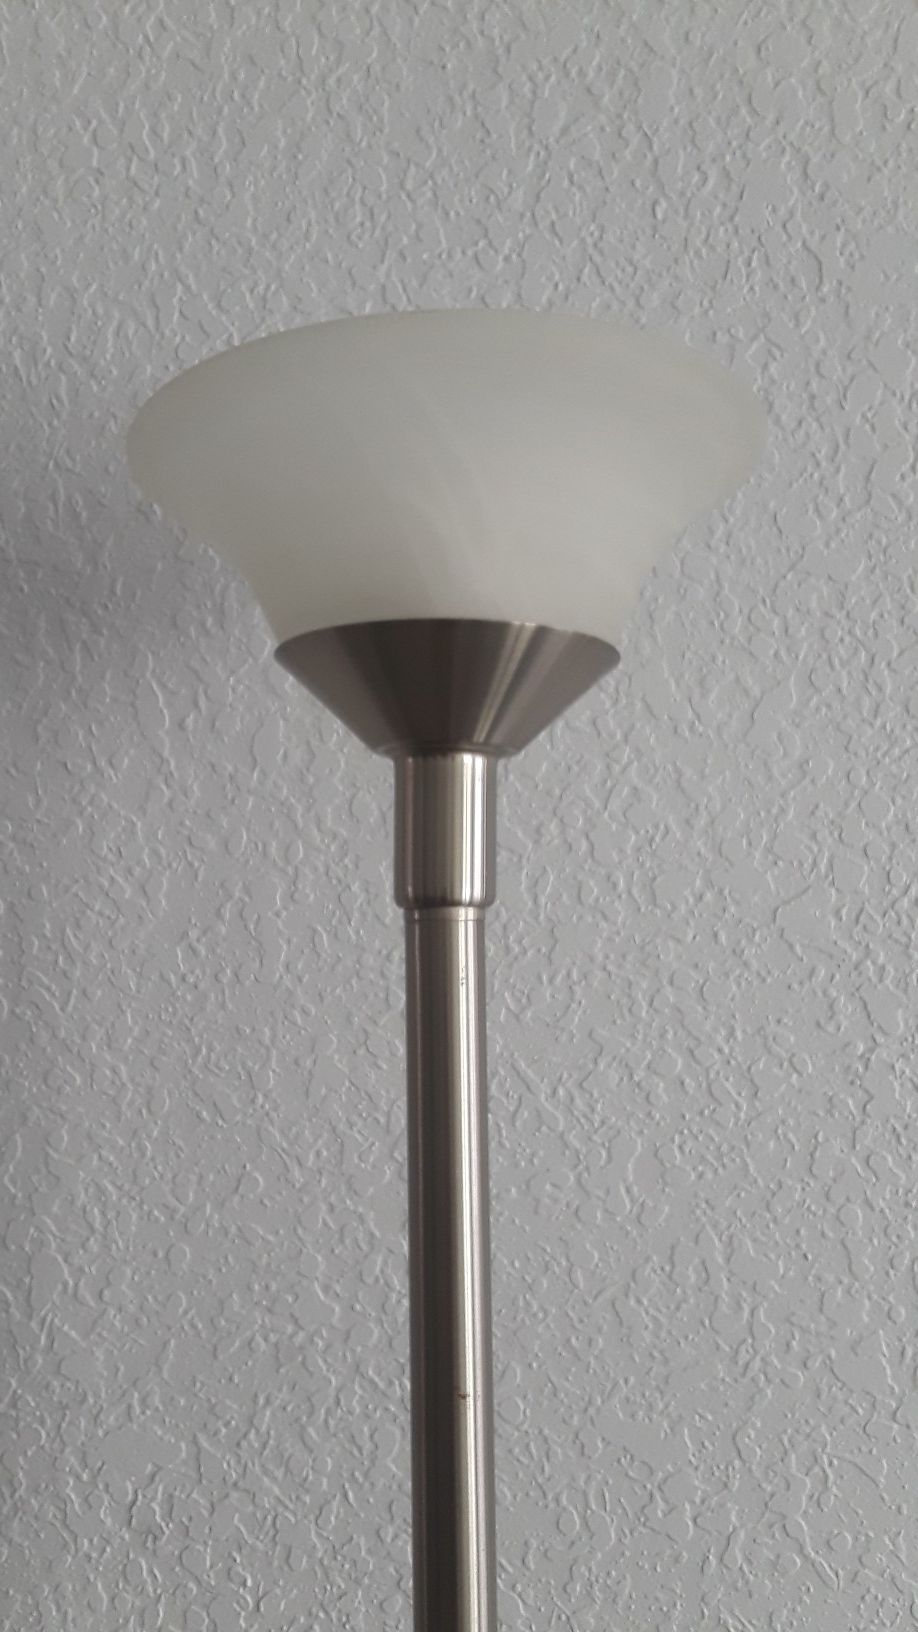 Stainless steel floor lamp